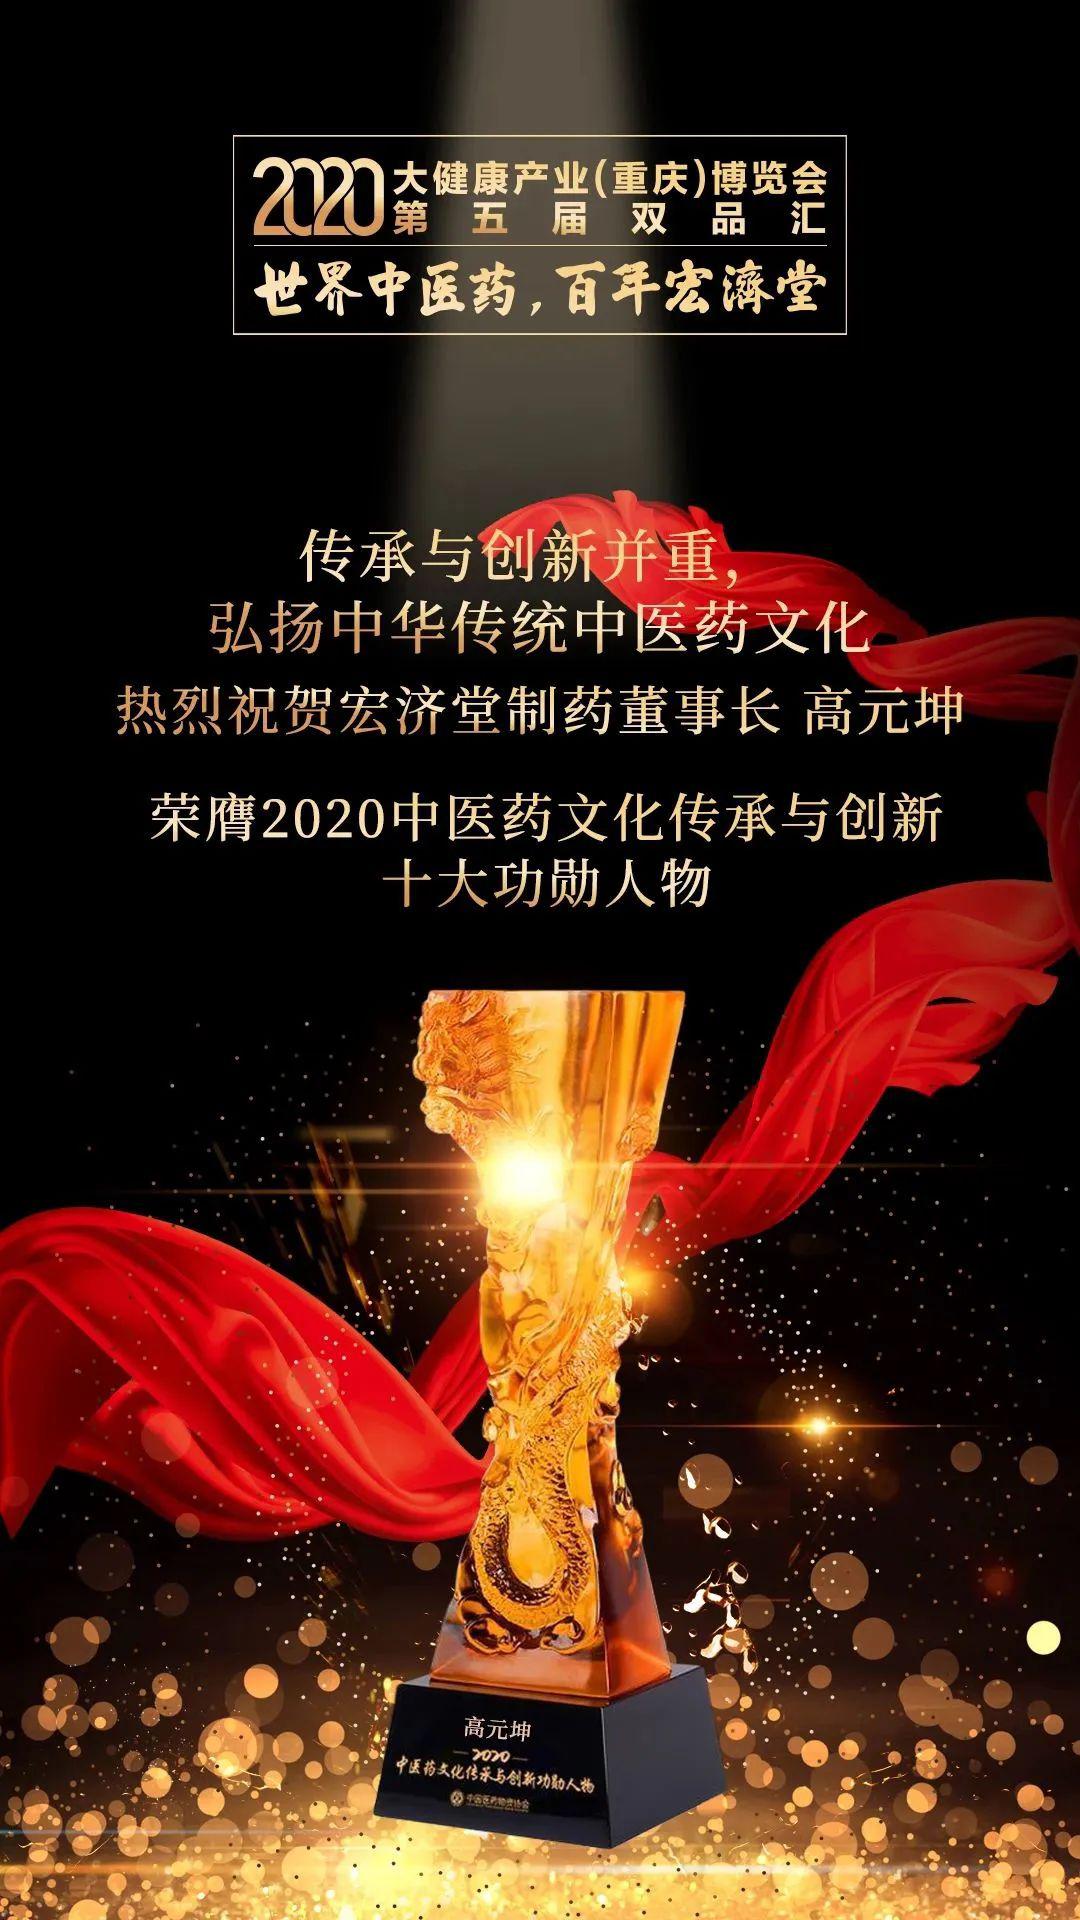 宏济堂制药董事长高元坤出席2020大健康产业博览会系列活动